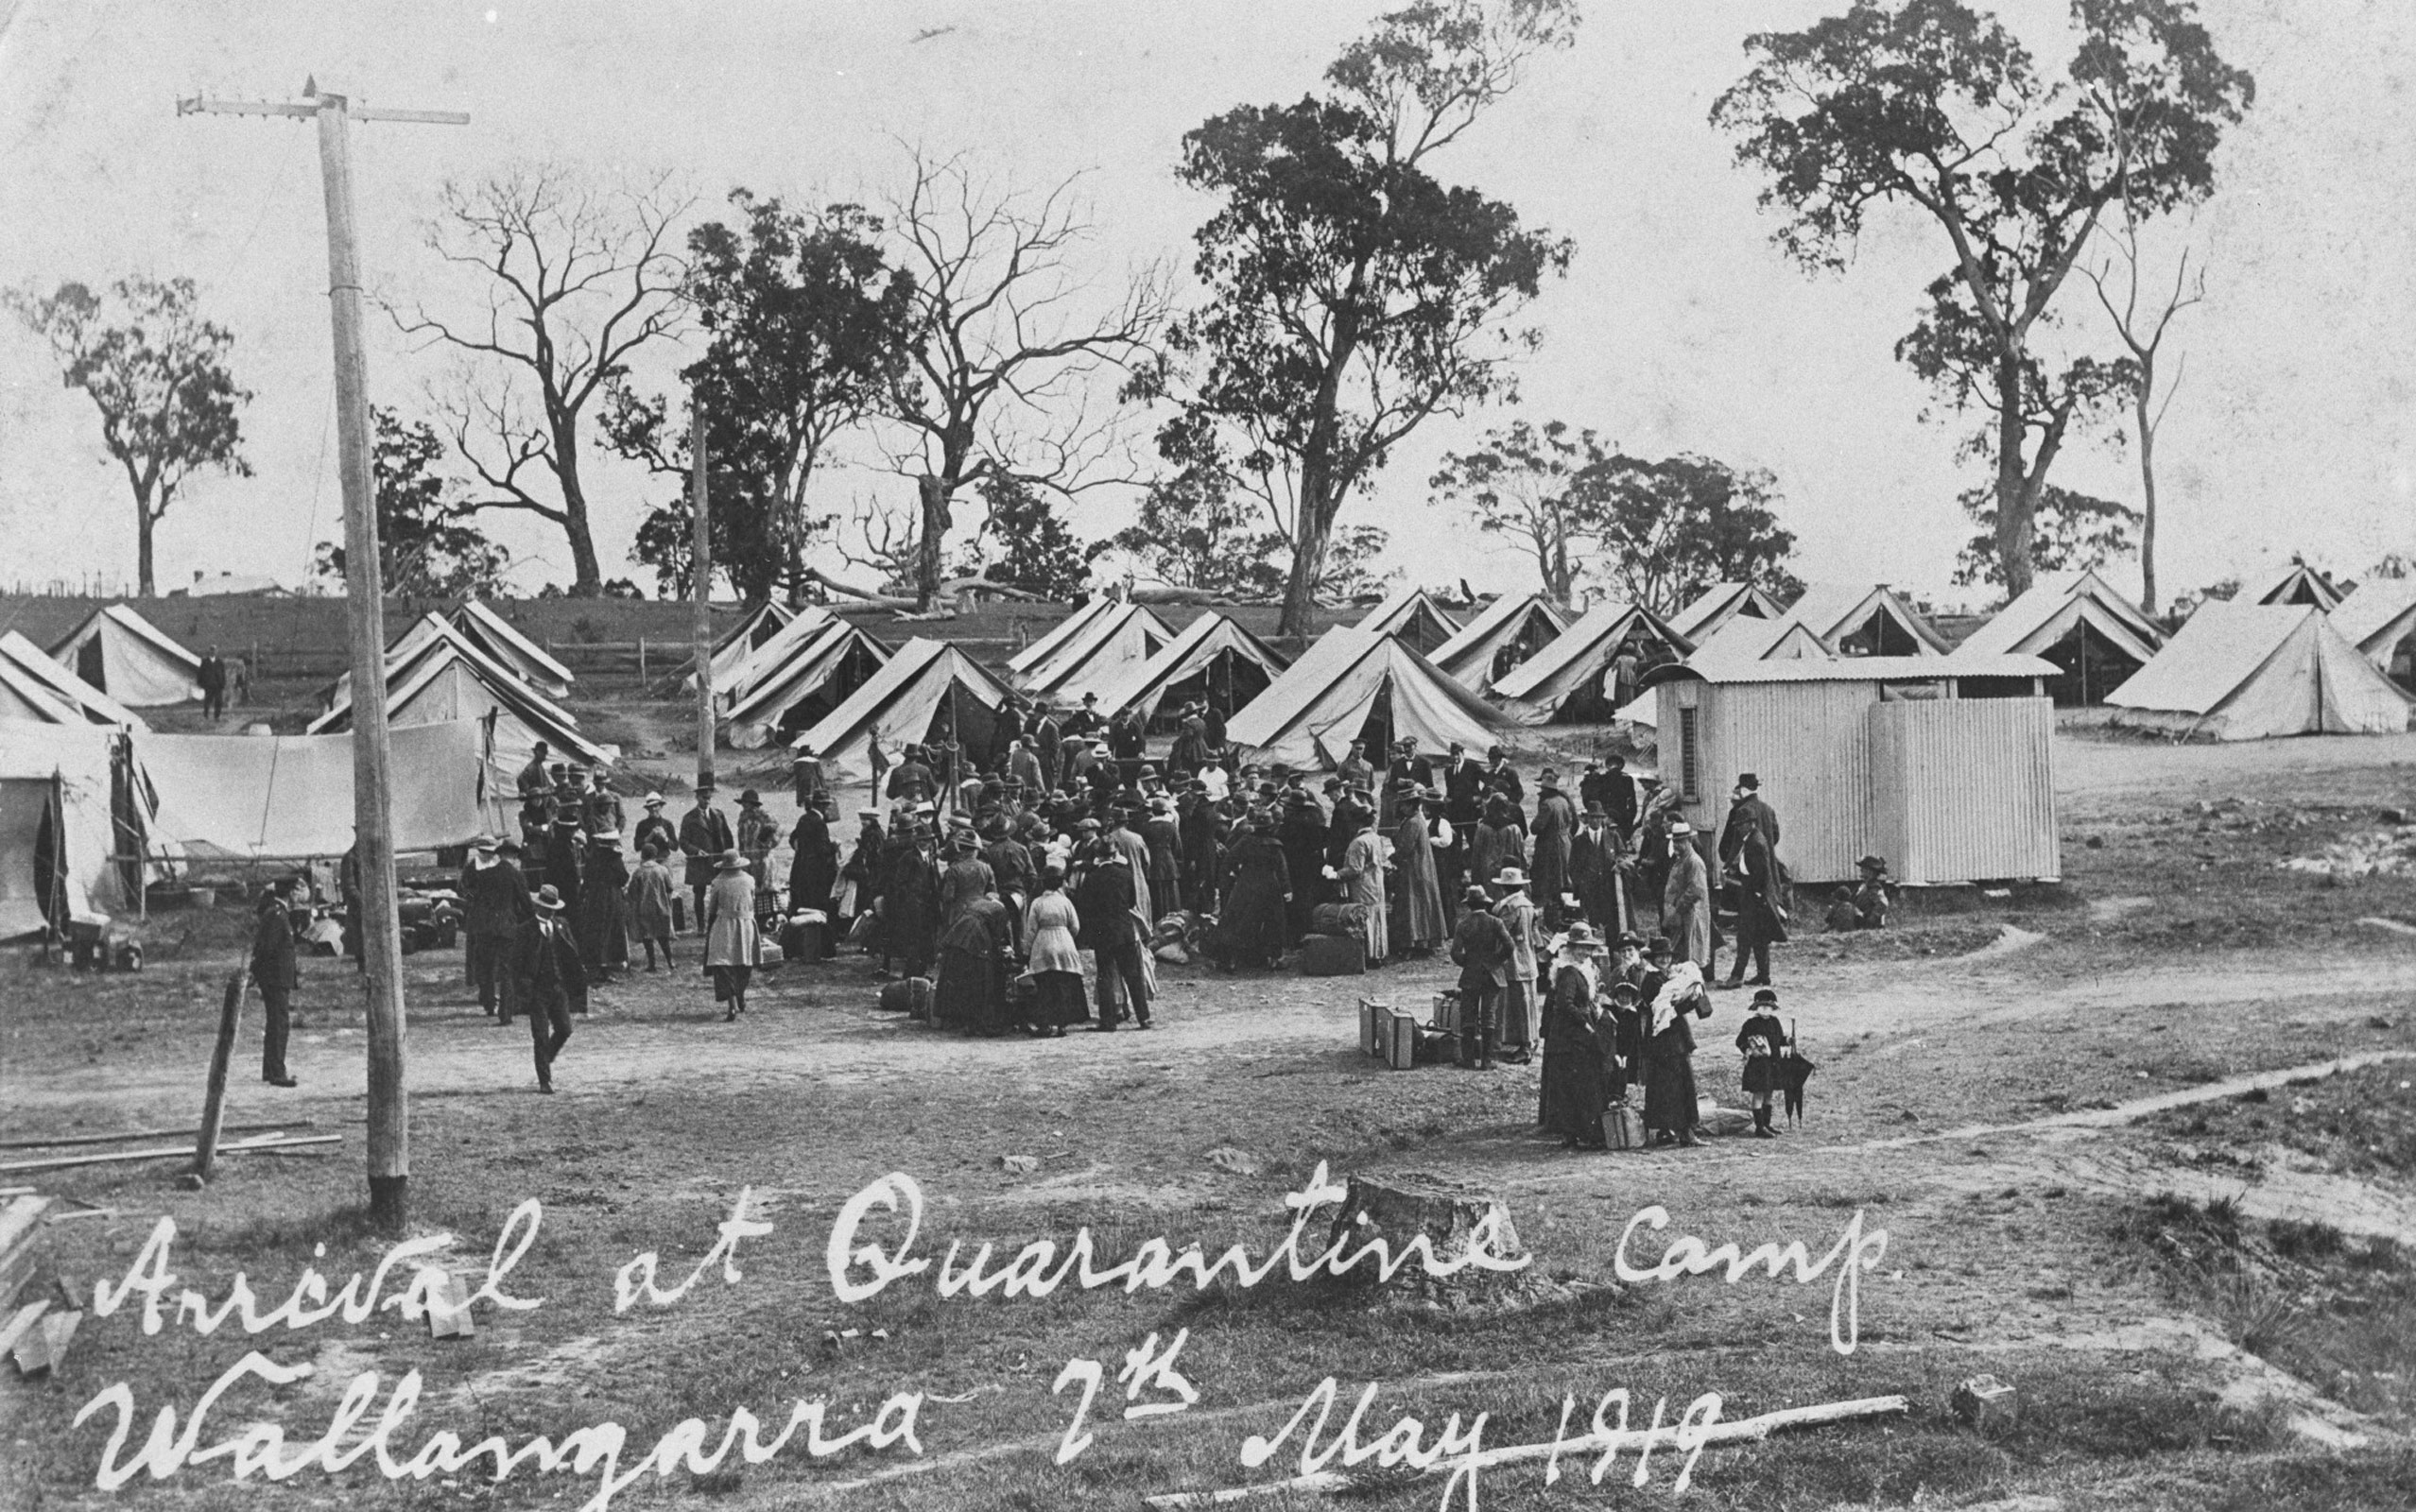 <p>Influenza quarantine camp setup at Wallangarra, Queensland, 1919</p>
